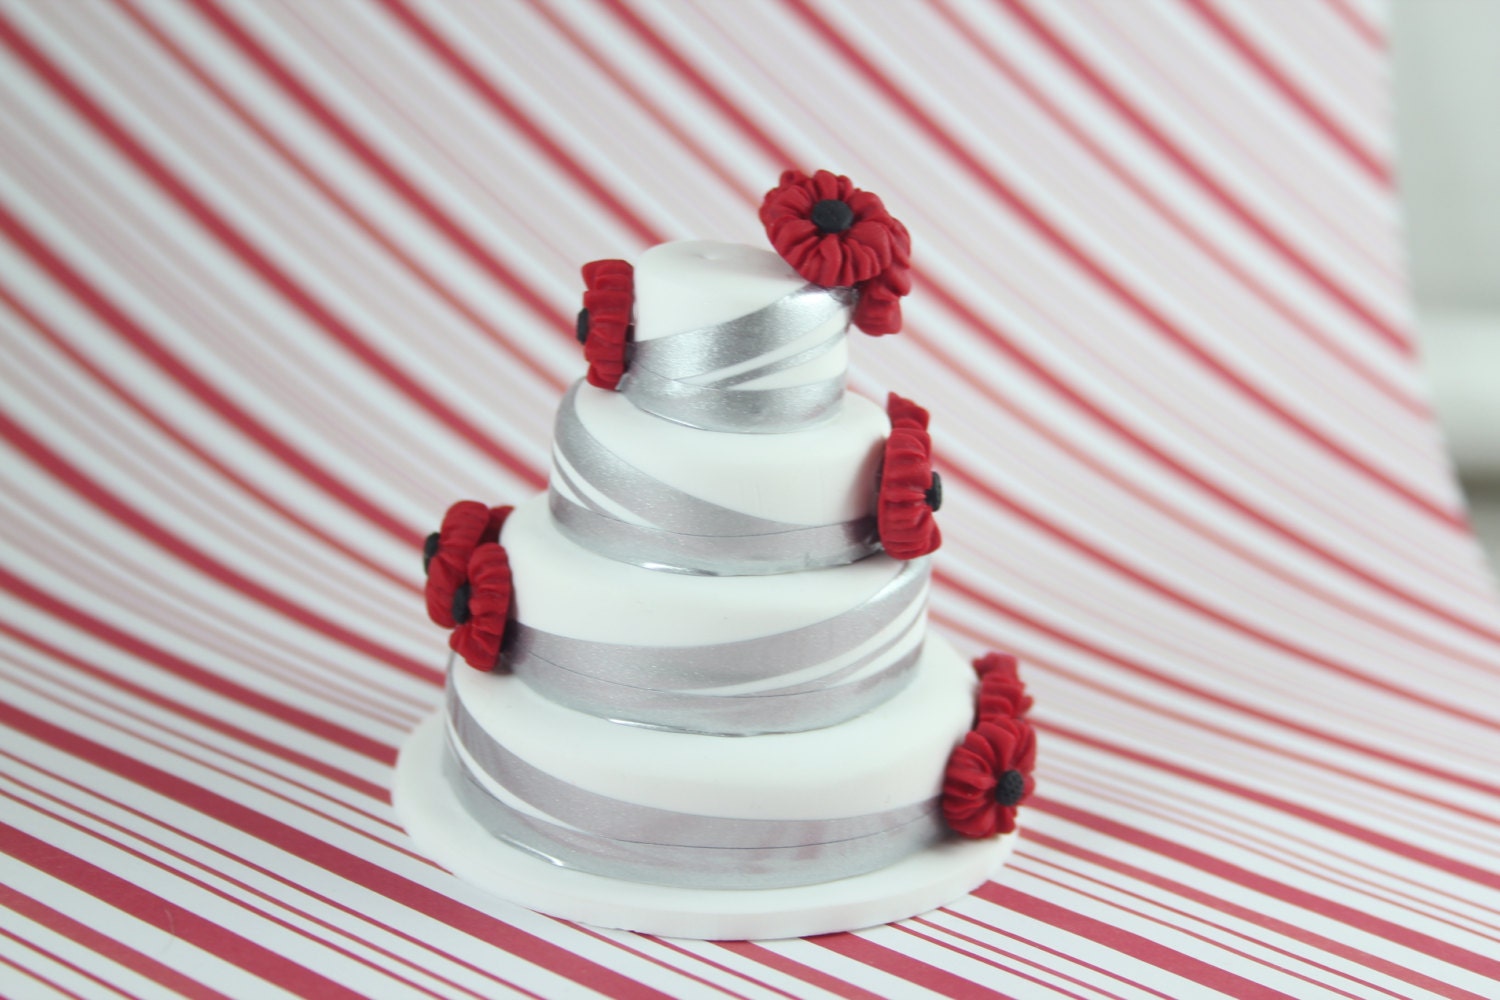 wedding cake replica ornament custom wedding cake ornament